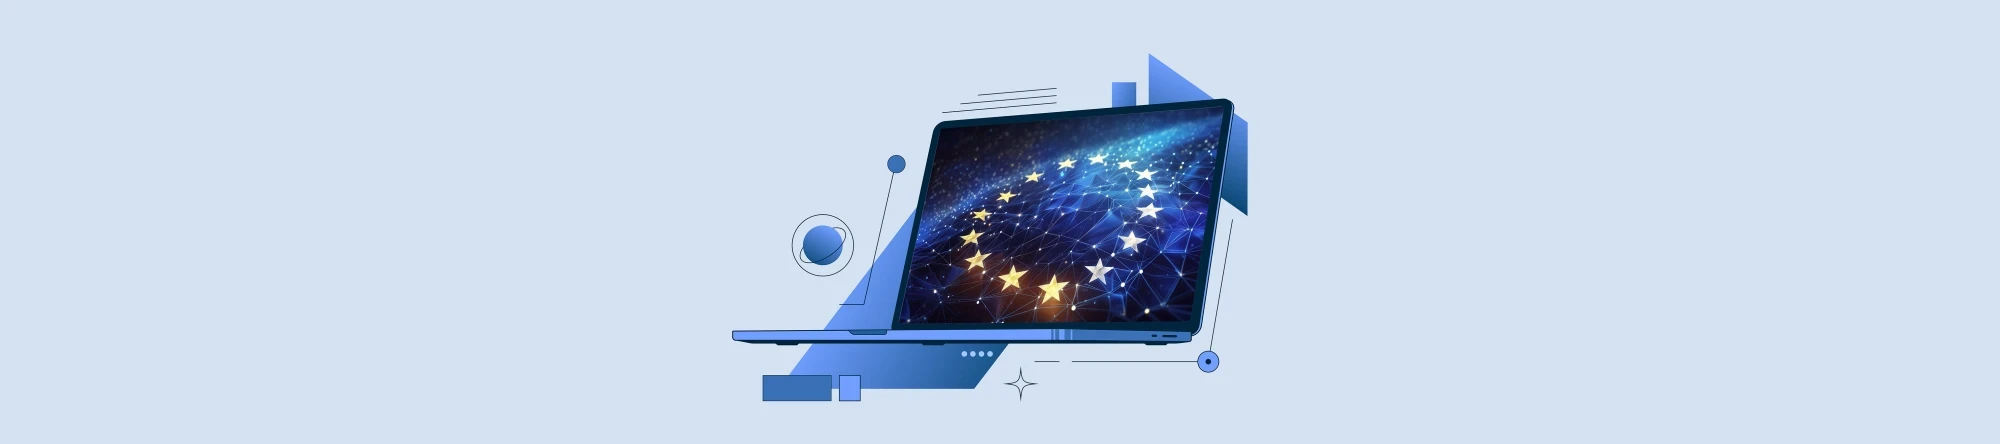 Digitale Flagge der Europäischen Union, bestehend aus Sternen, die über ein Netzwerk dynamischer Datenpunkte leuchten und Konnektivität und Einheit symbolisieren | SPIRIT/21